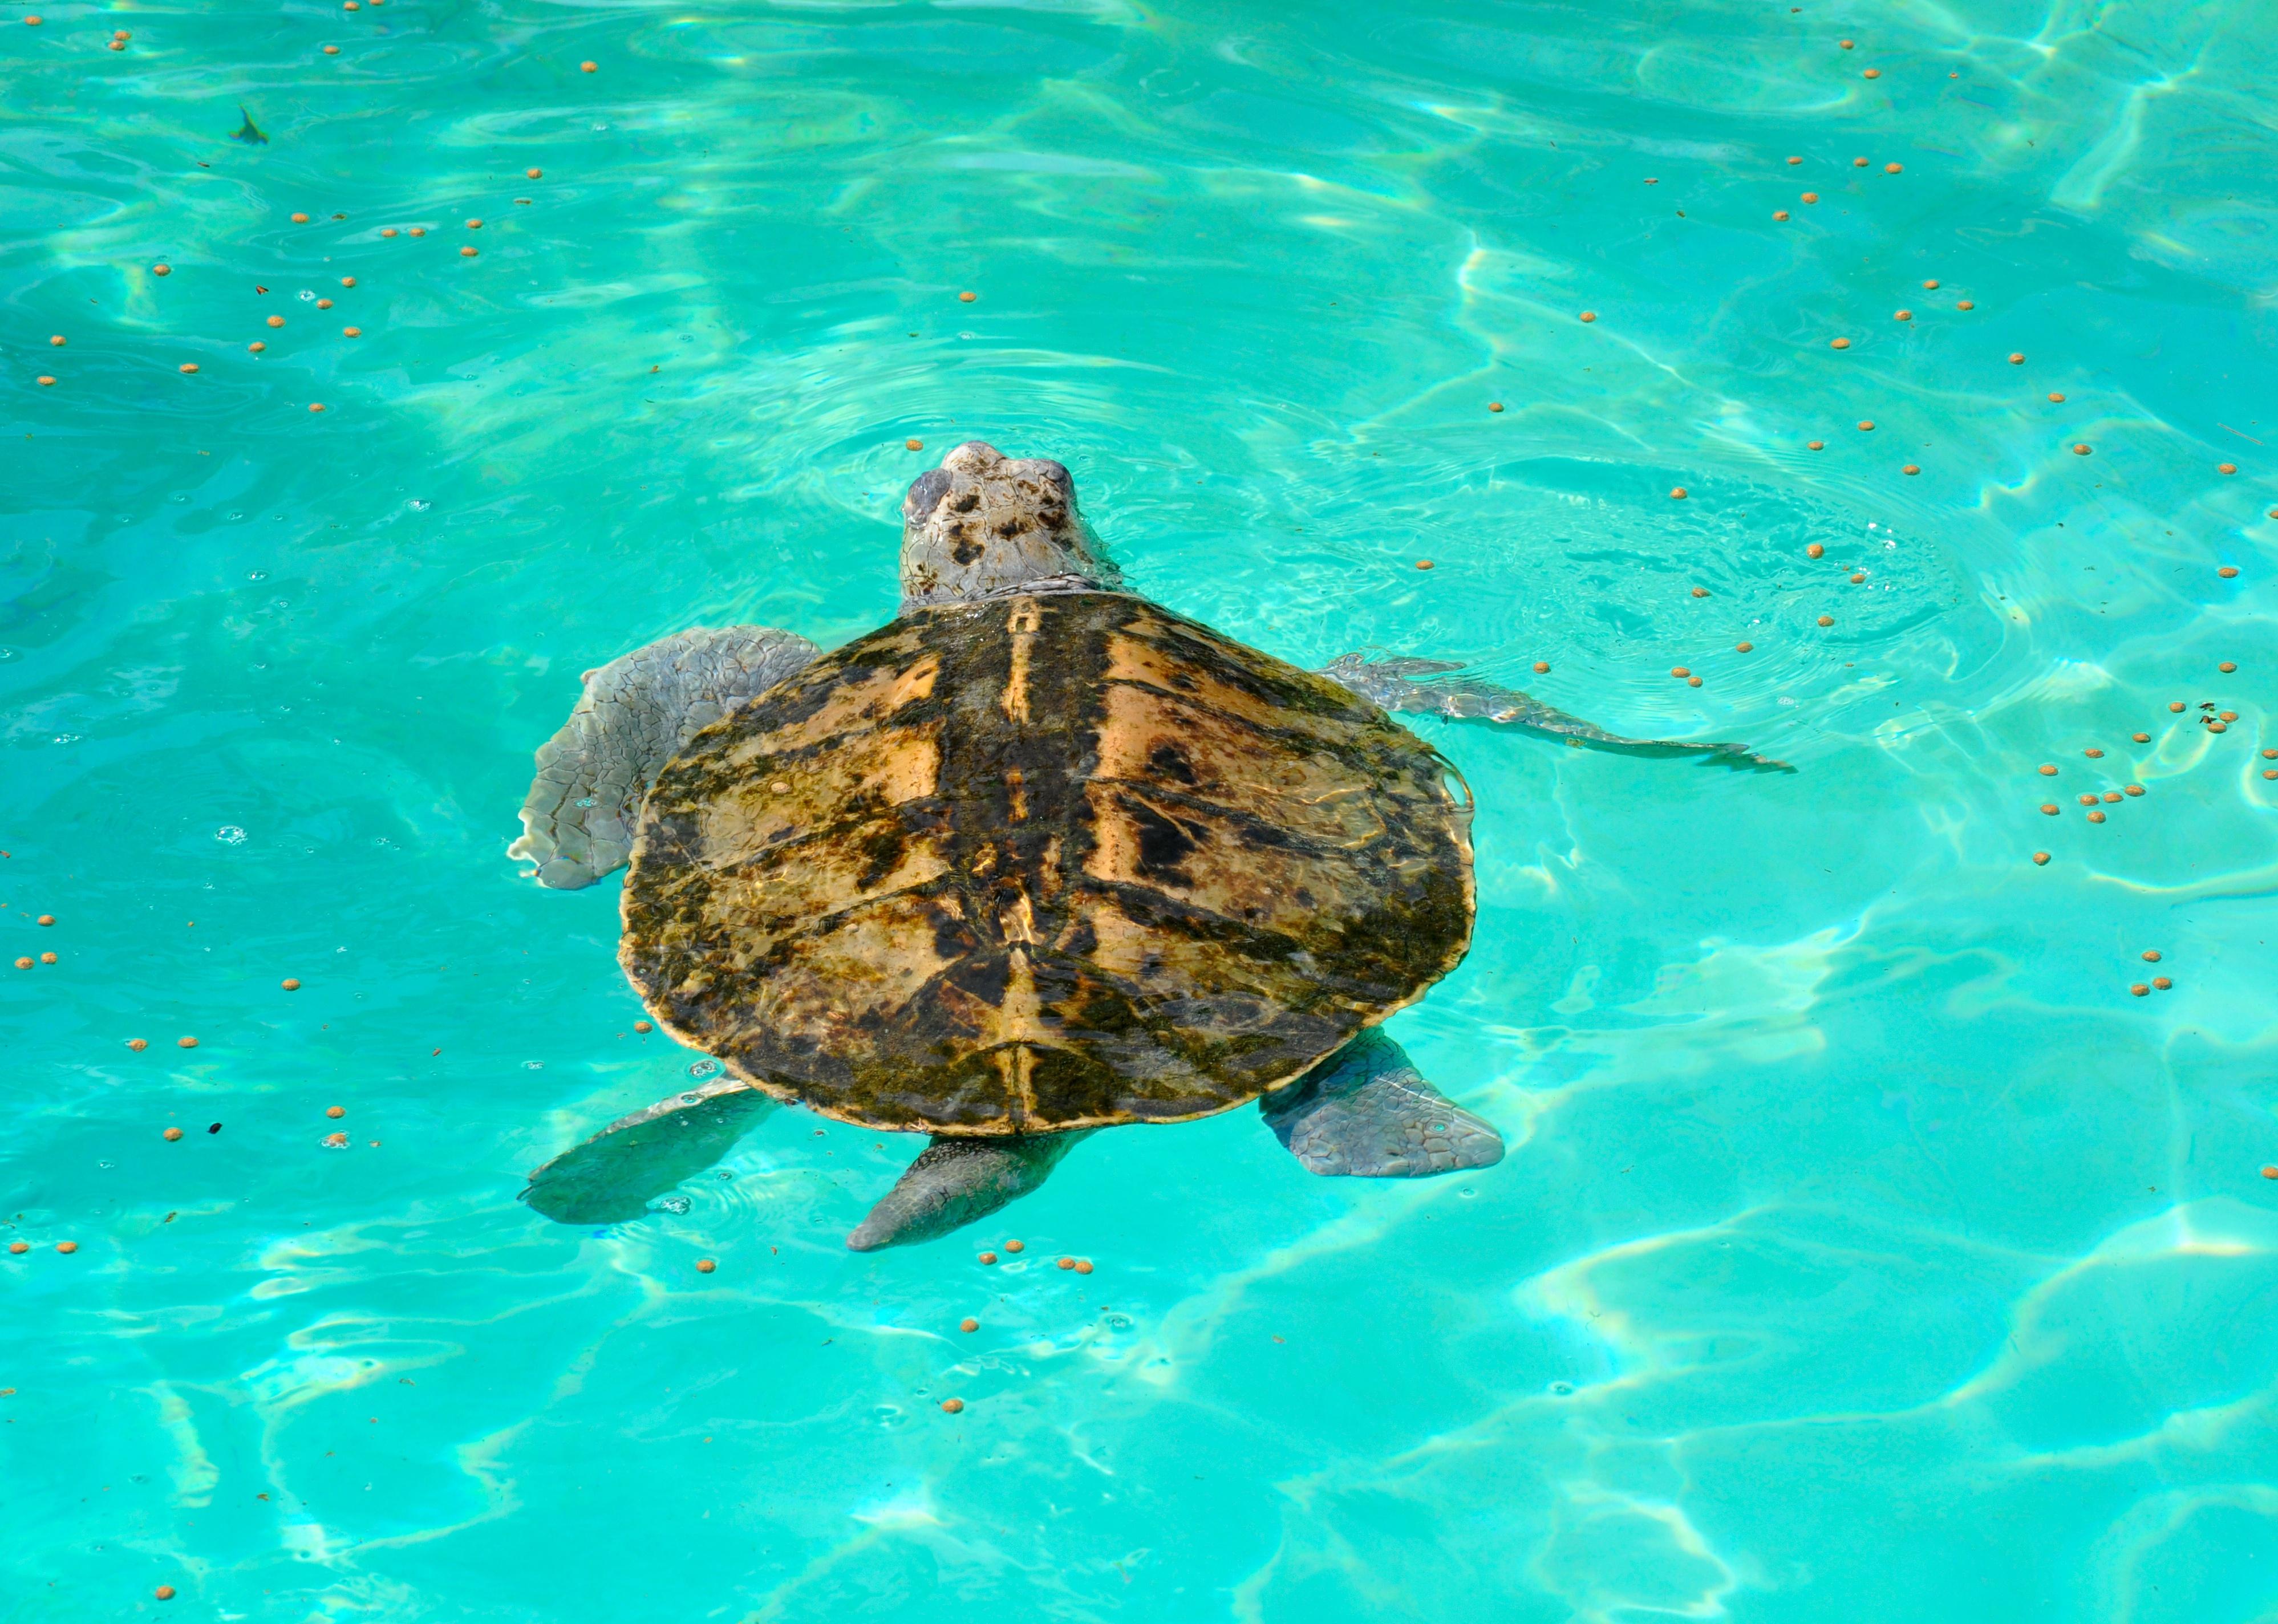 Kemp's ridley turtle lora swimming in caribbean sea.